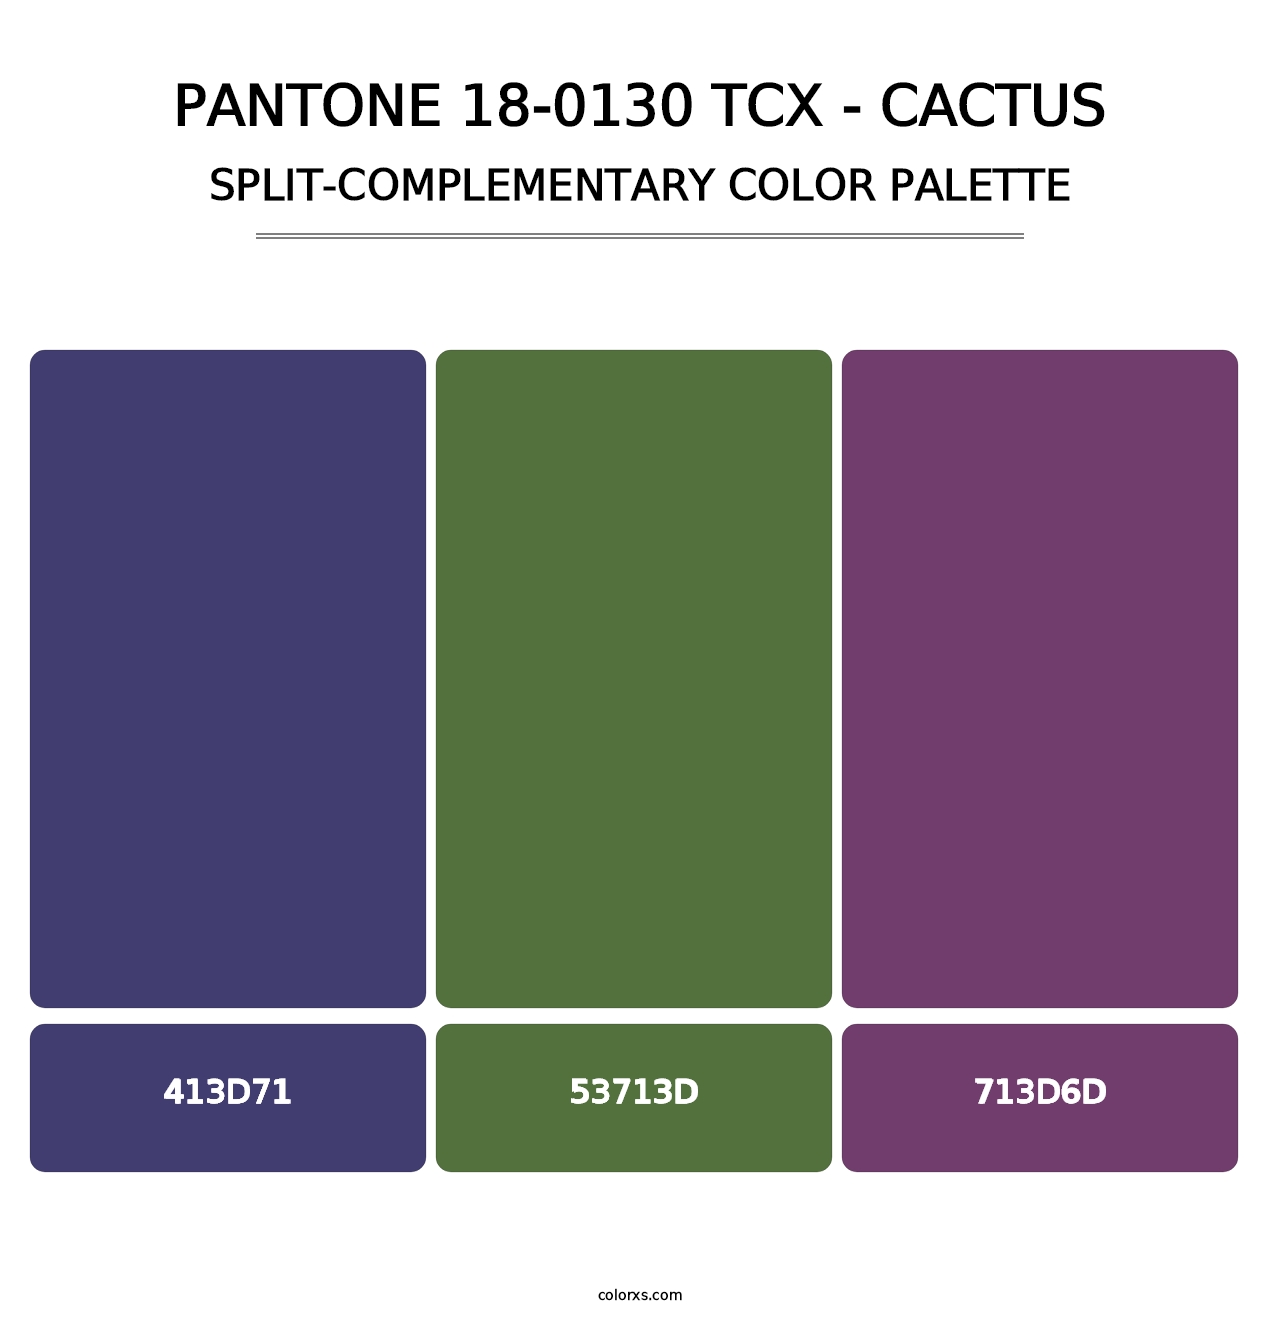 PANTONE 18-0130 TCX - Cactus - Split-Complementary Color Palette